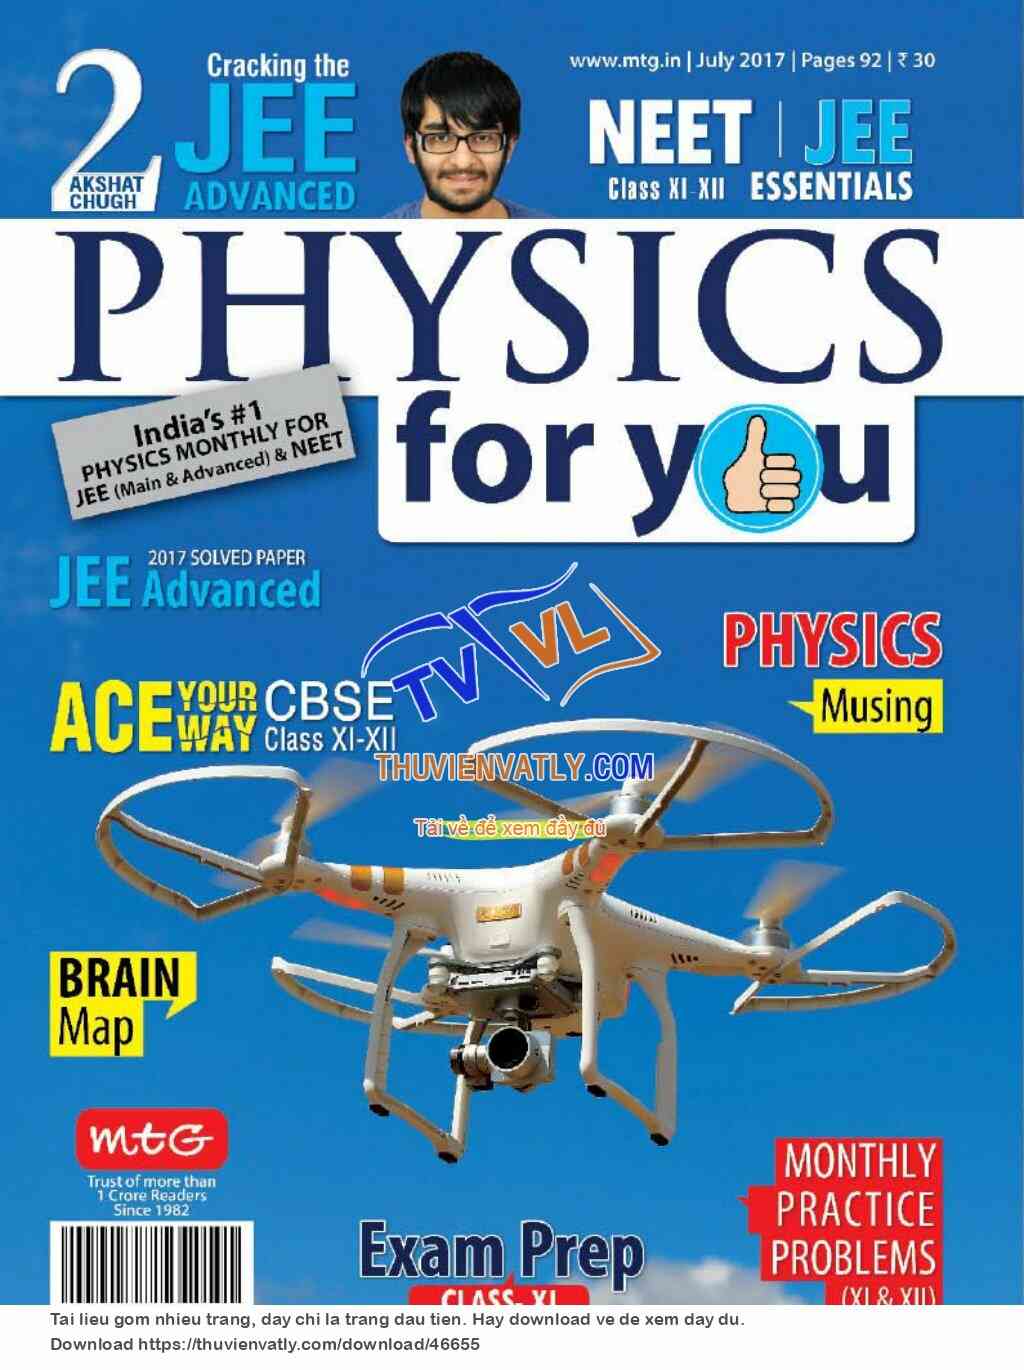 Tạp chí Physics For You - Tháng 7/2017